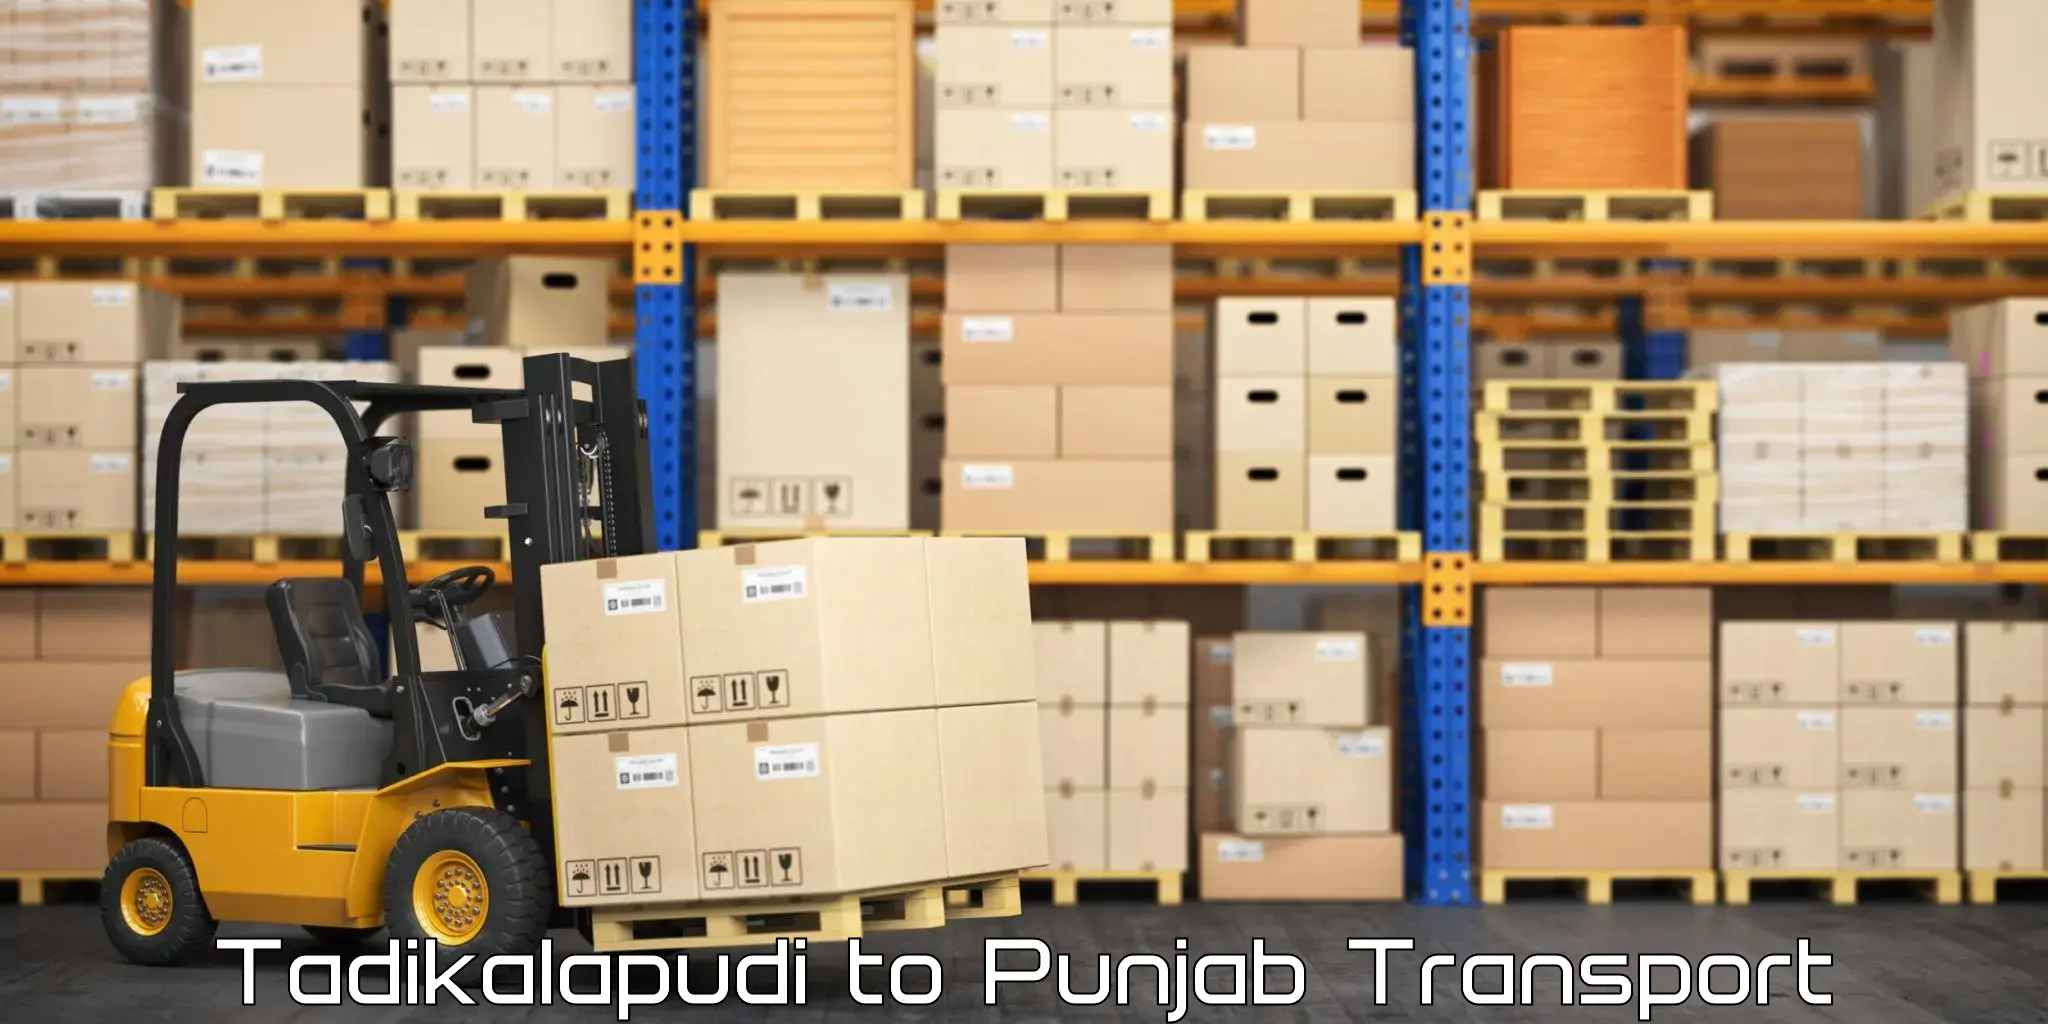 Cargo transport services Tadikalapudi to Jalalabad